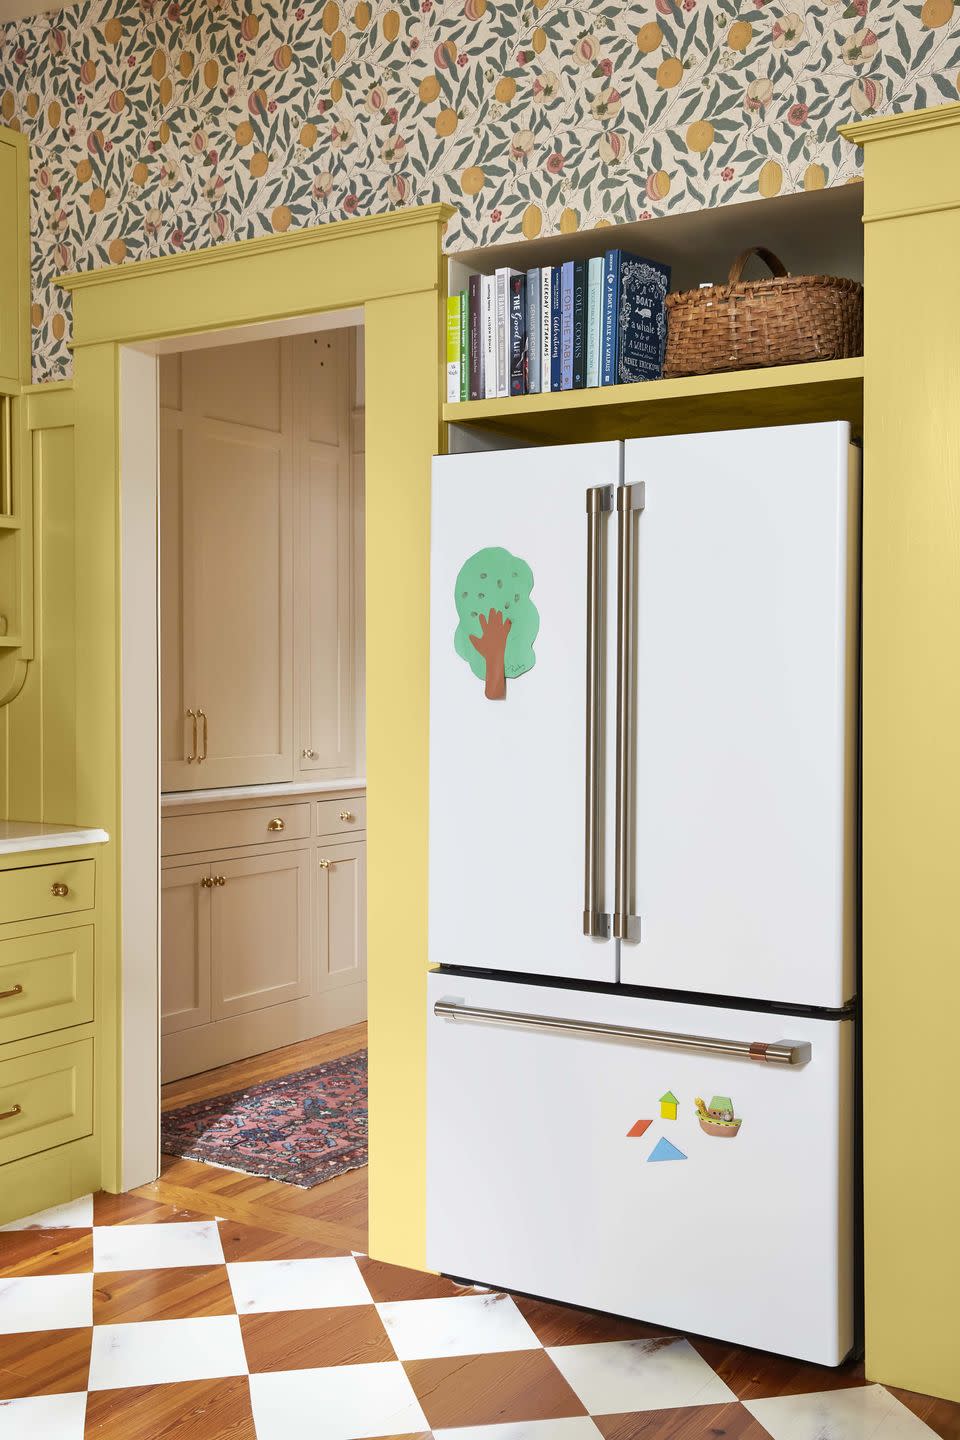 british style kitchen white refrigerator